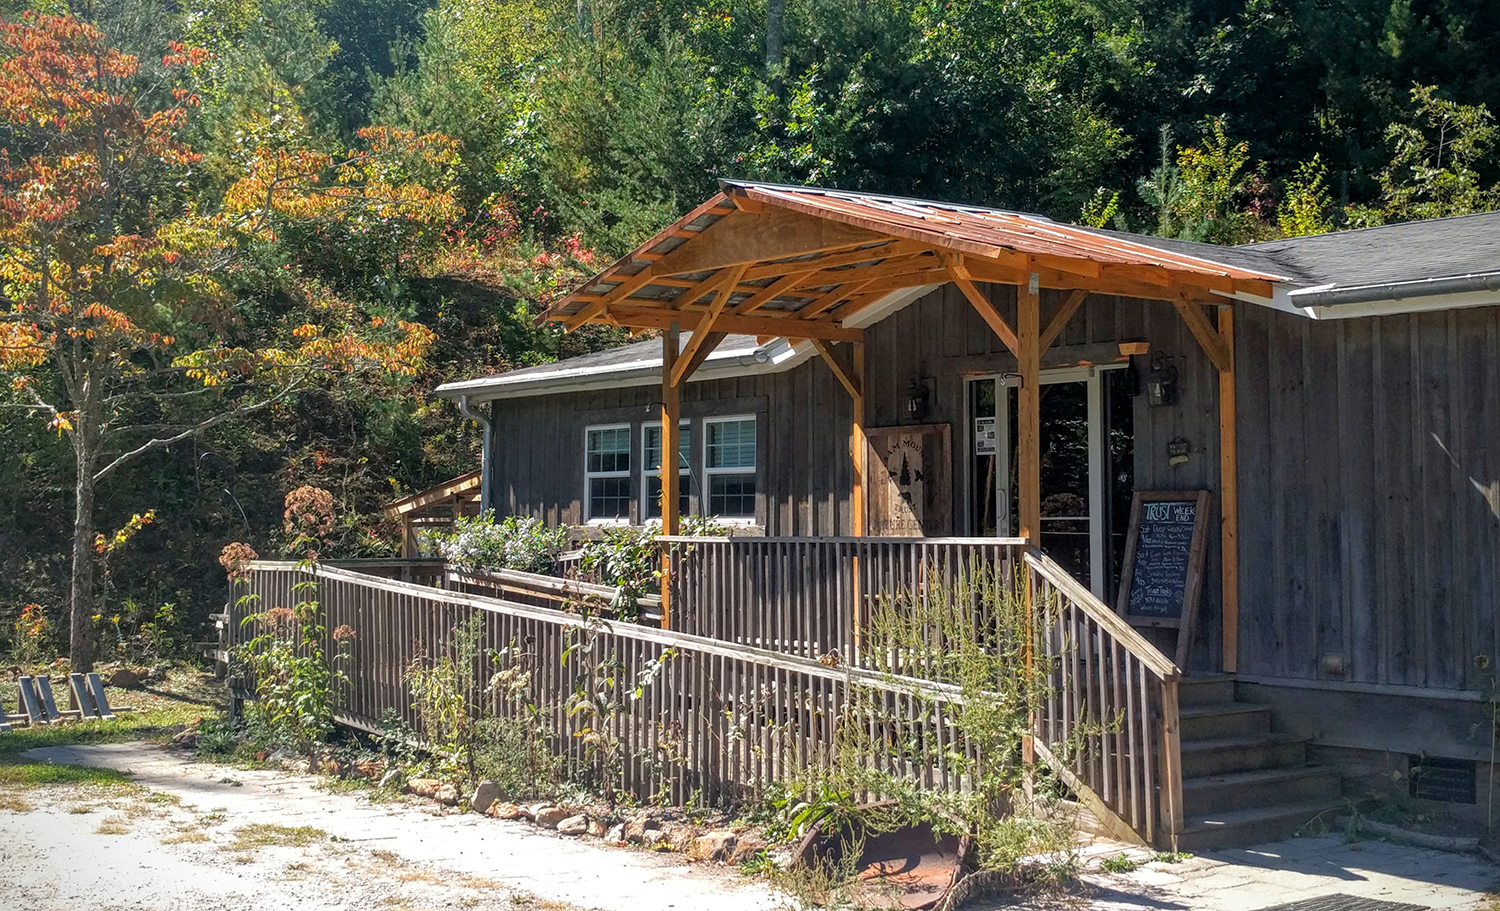 Balsam Mountain Trust Nature Center